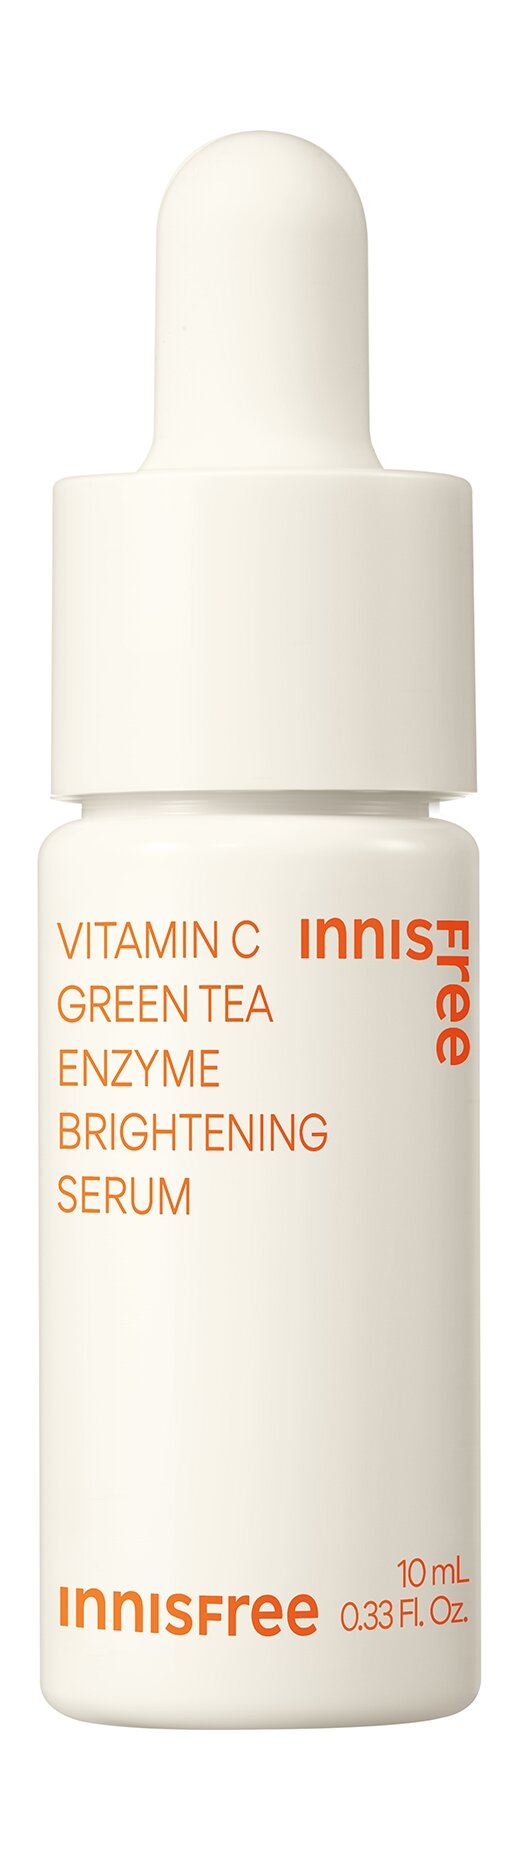 Сыворотка для выравнивания тона кожи с витамином С Innisfree Vitamin C Green Tea Enzyme Brightening Serum 10 мл .